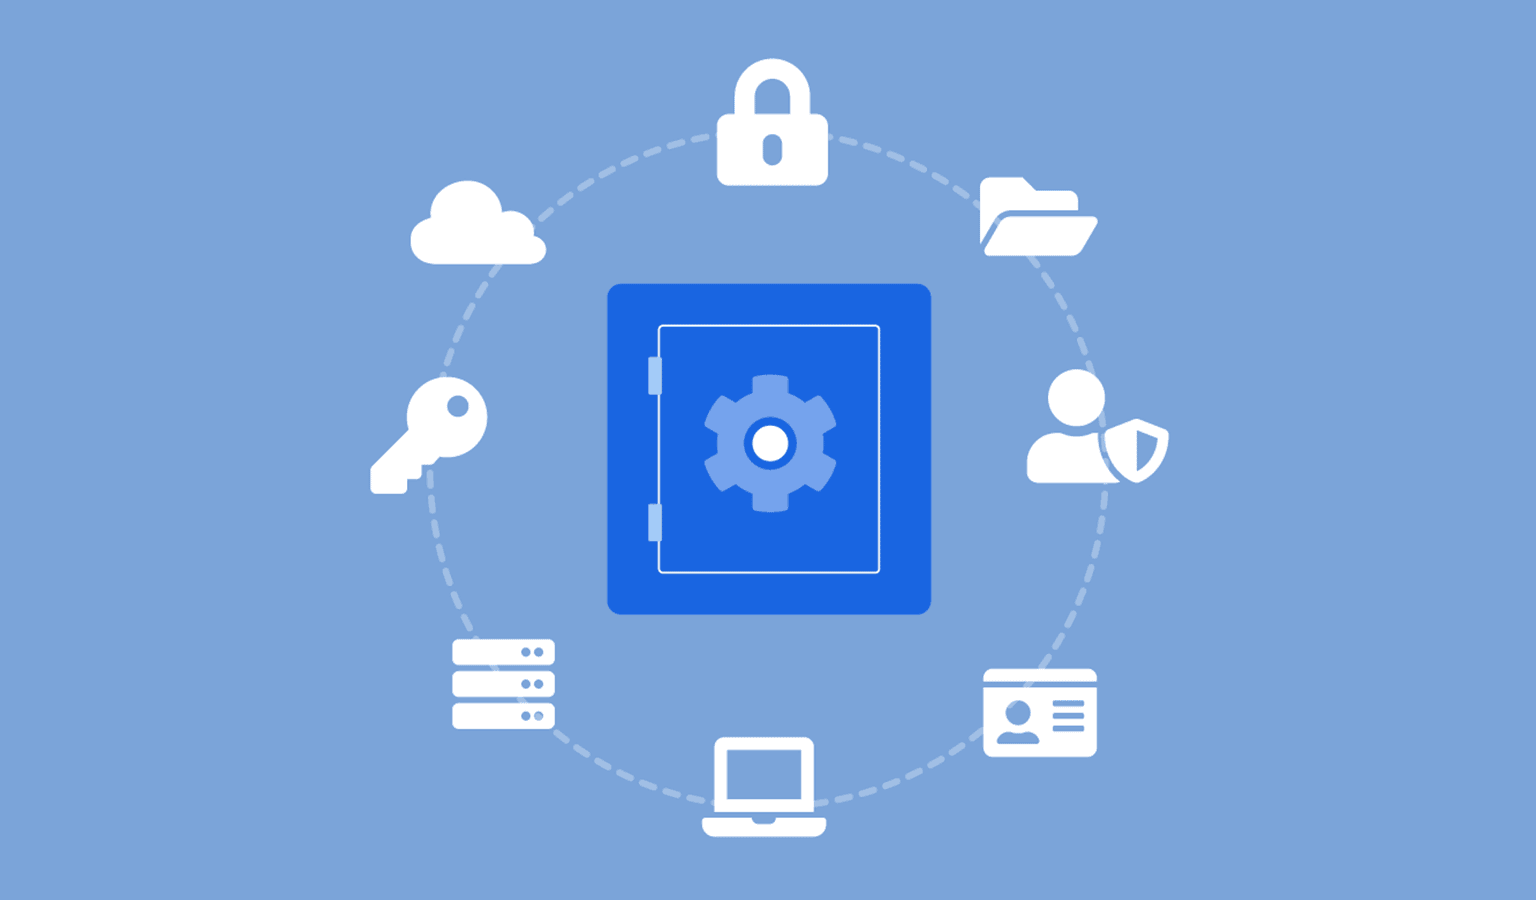 Svijetloplava pozadina s tamno plavim sefom u sredini okruženim bijelim ikonama brave, oblaka, ključa, poslužitelja, datoteka, računala